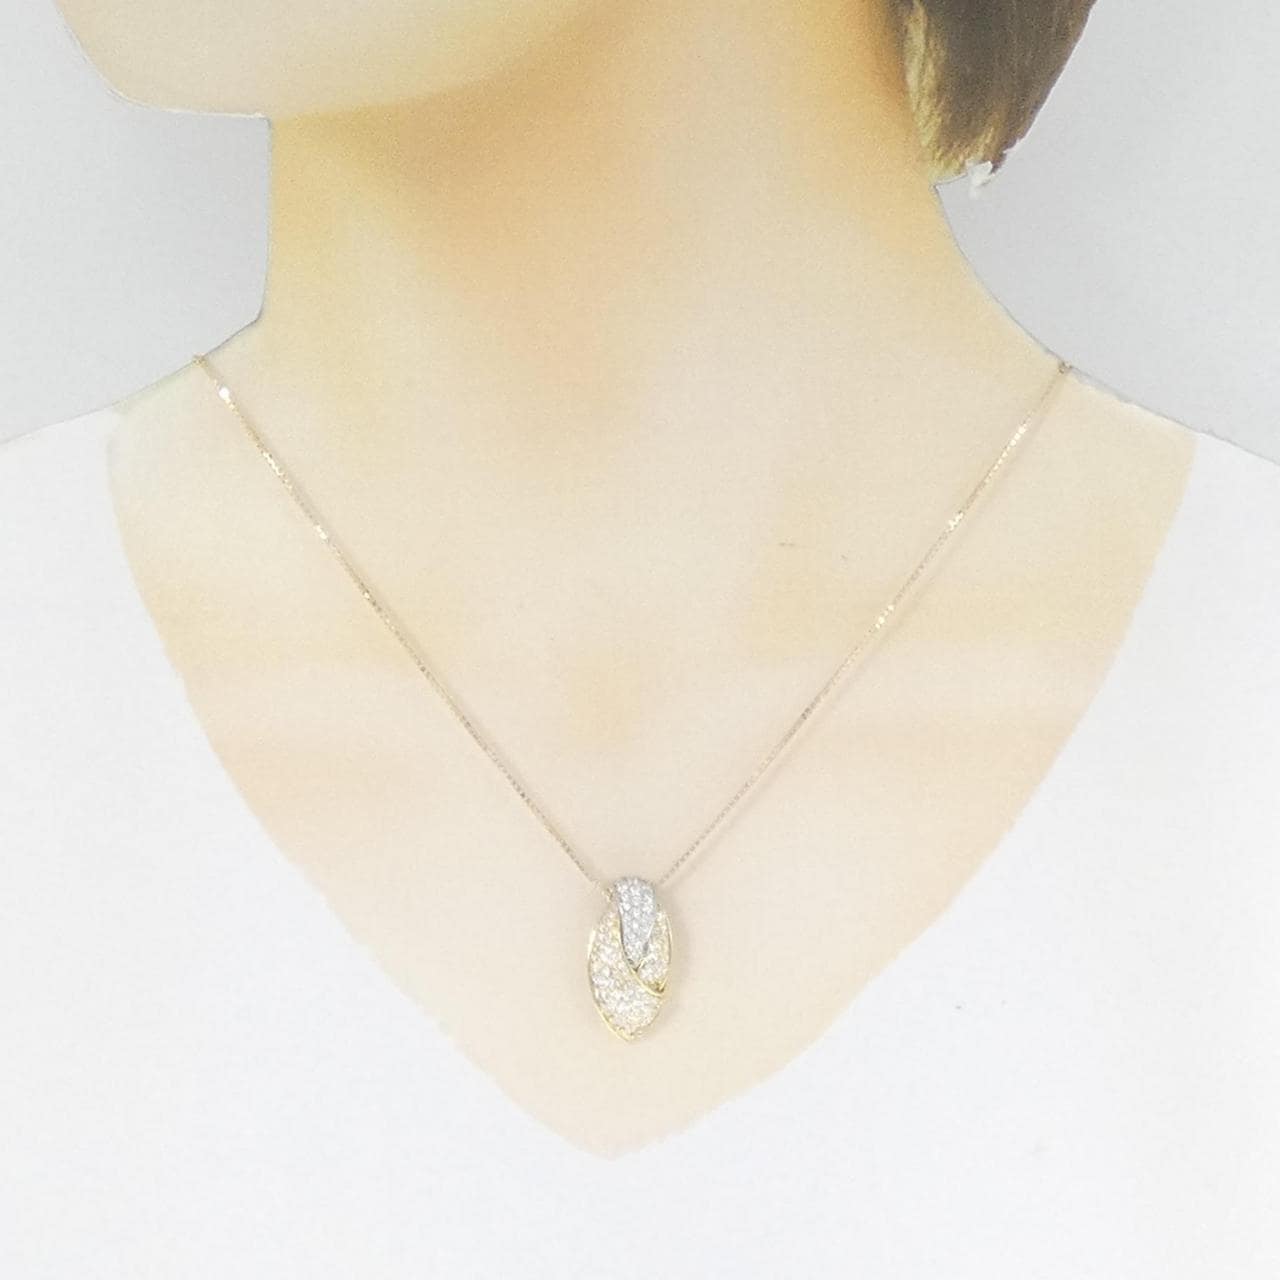 K18YG/PT Pave Diamond Necklace 1.40CT